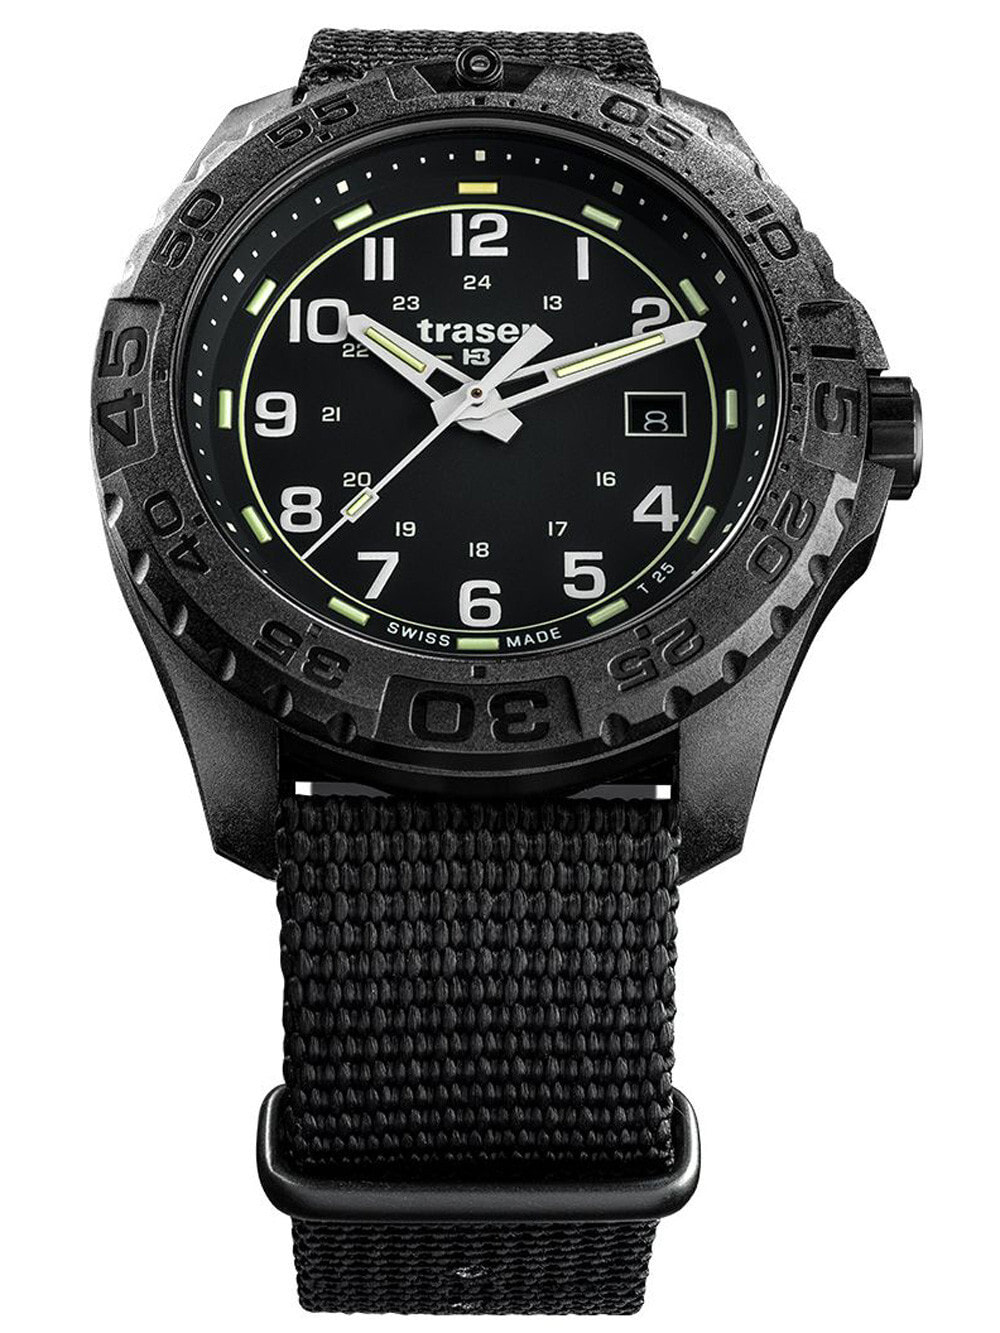 Мужские наручные часы с черным текстильным ремешком Traser H3 108673 P96 OdP Evolution black Mens 44mm 20ATM